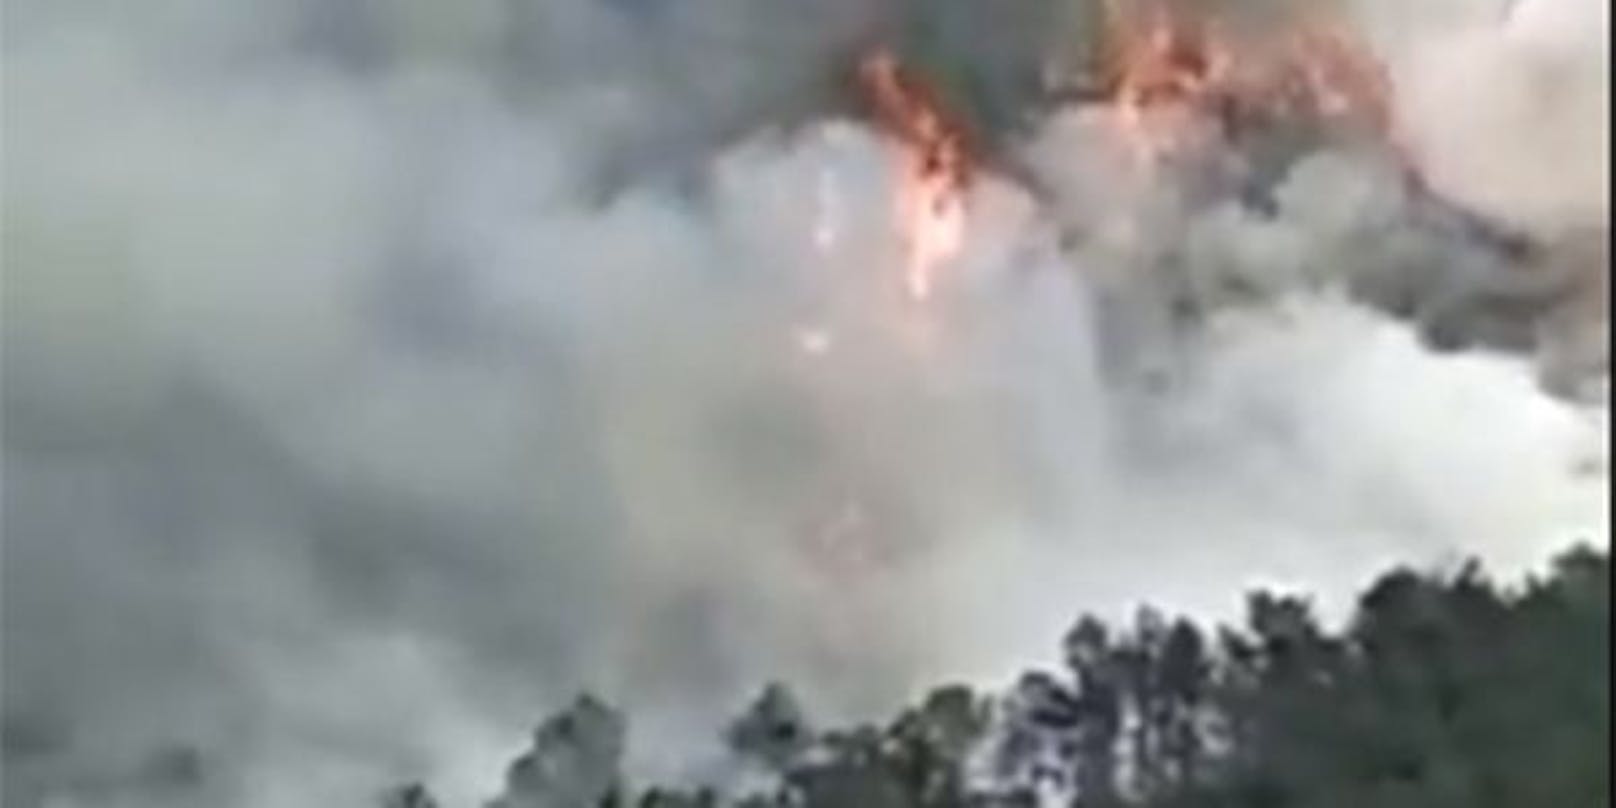 Ein Video auf Twitter zeigt, wie von der mutmasslichen Absturzstelle eine Rauchwolke aufsteigt.